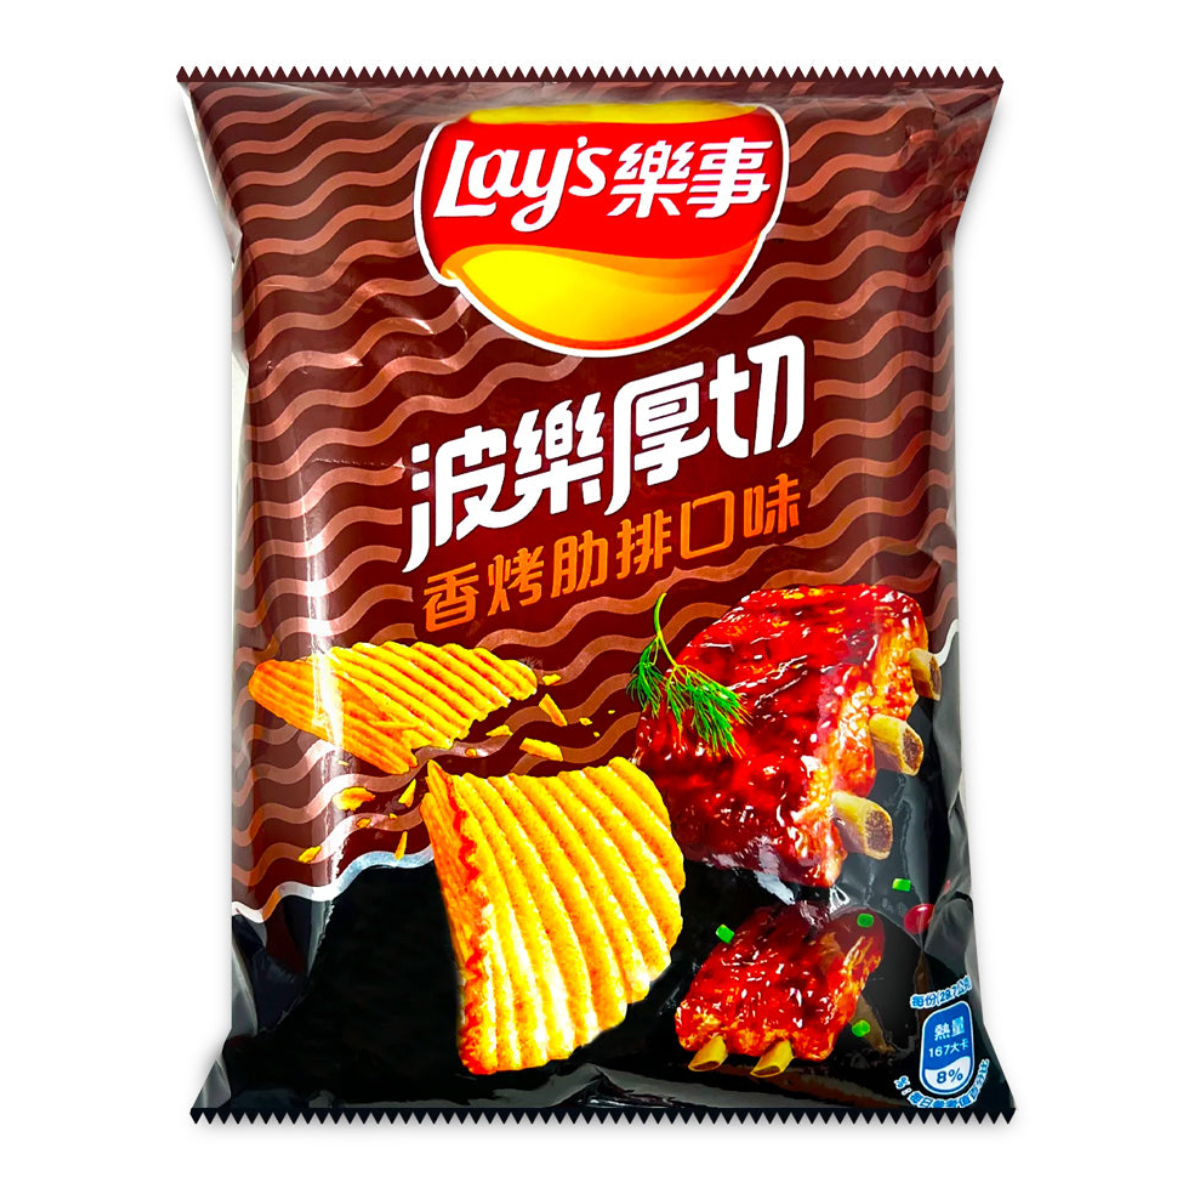 Lay's Rich Cut BBQ (60g) (Taiwan) 6-Pack